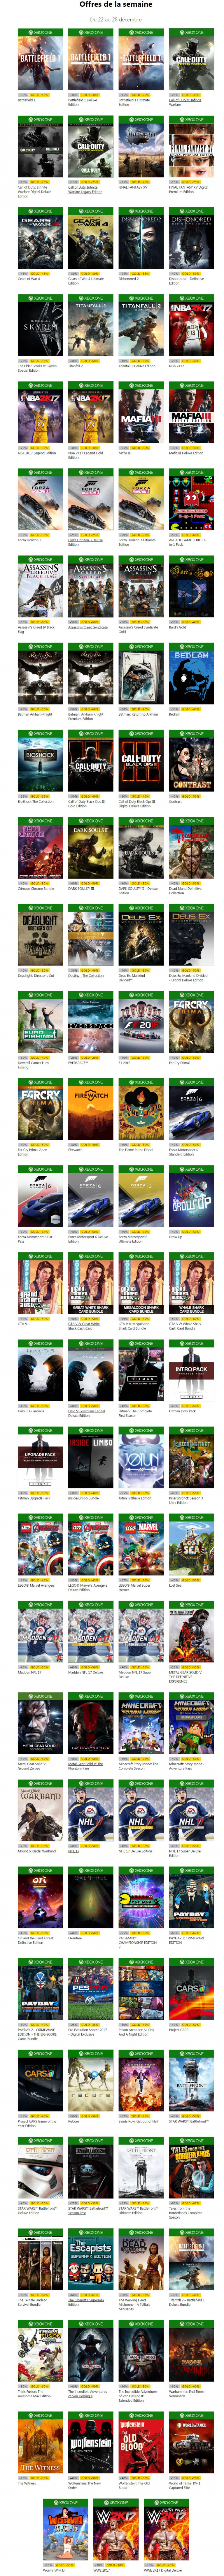 Marché Xbox Live : C'est parti pour les offres de Noël